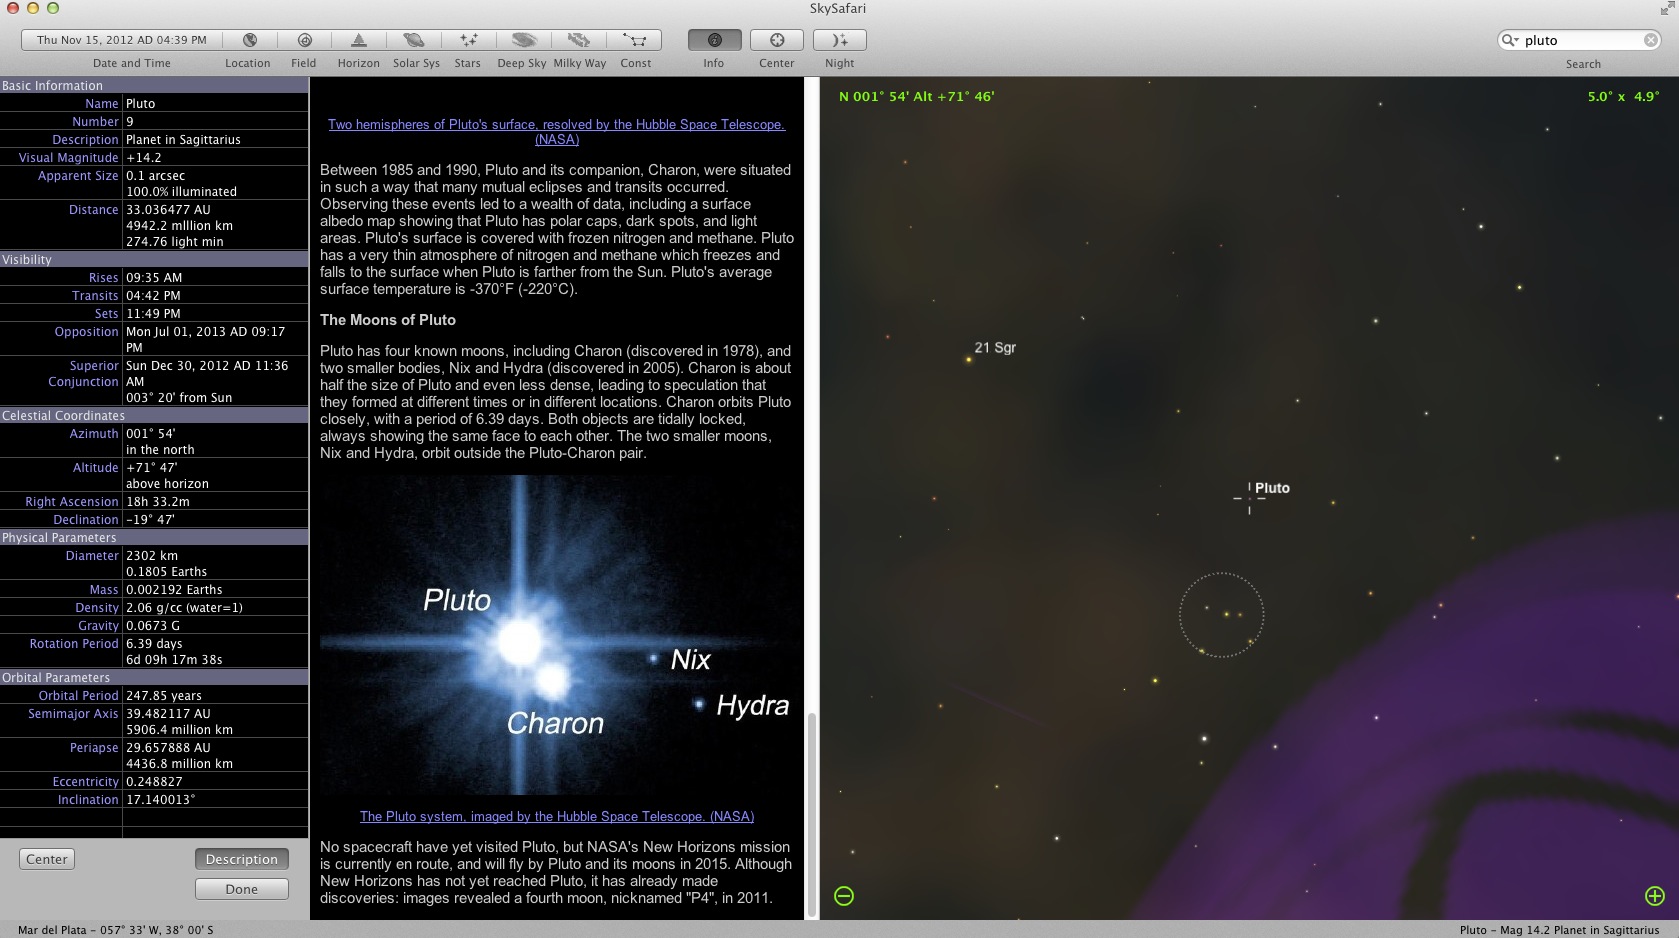 SkySafari 1.6 : Pluto information